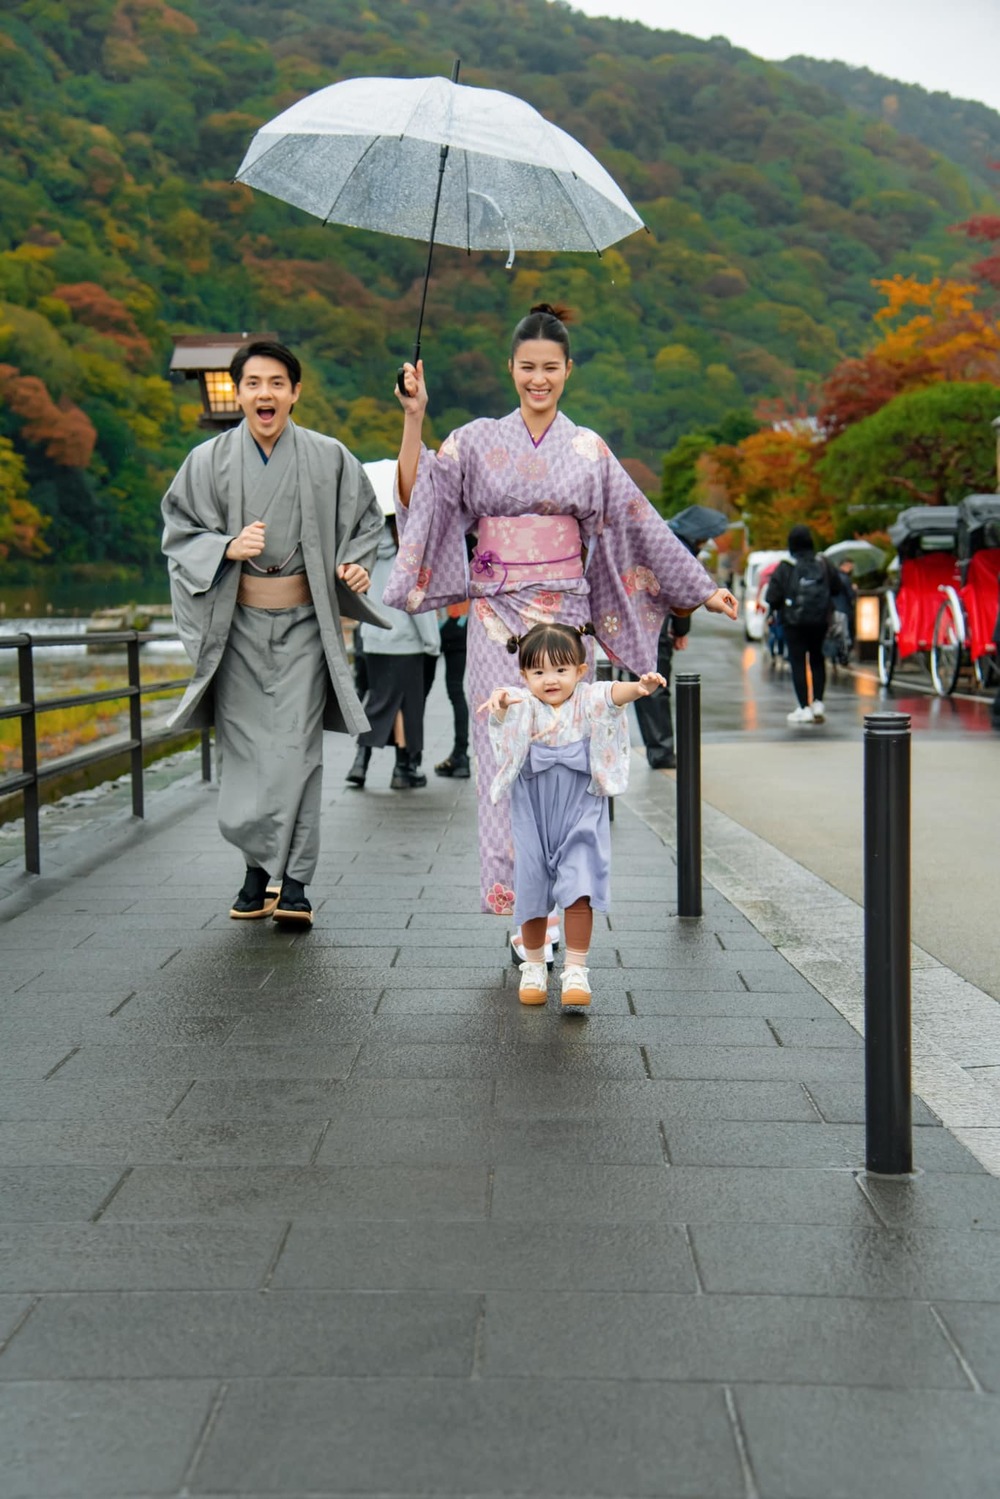 Con gái Đông Nhi đáng yêu khi mặc Kimono, được fan săn đón tại Nhật - Hình 2